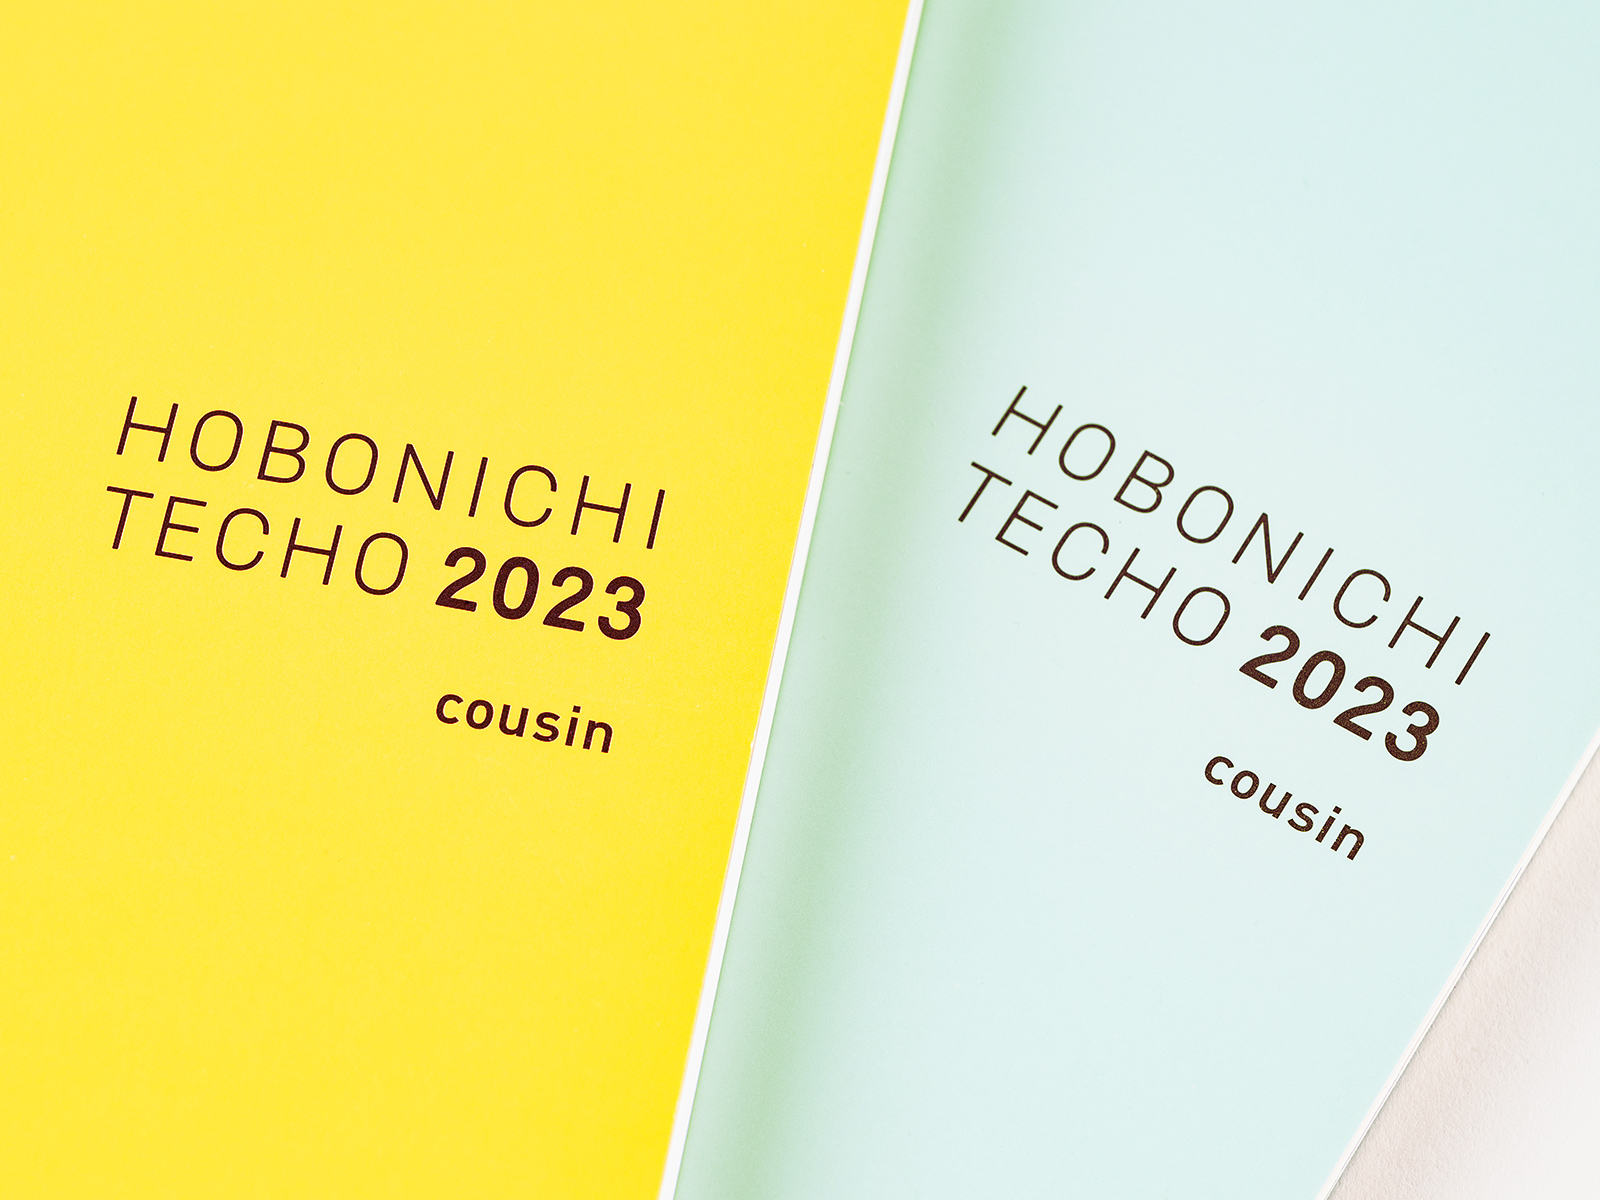 Cousin - Hobonichi Techo Book Buying Guide